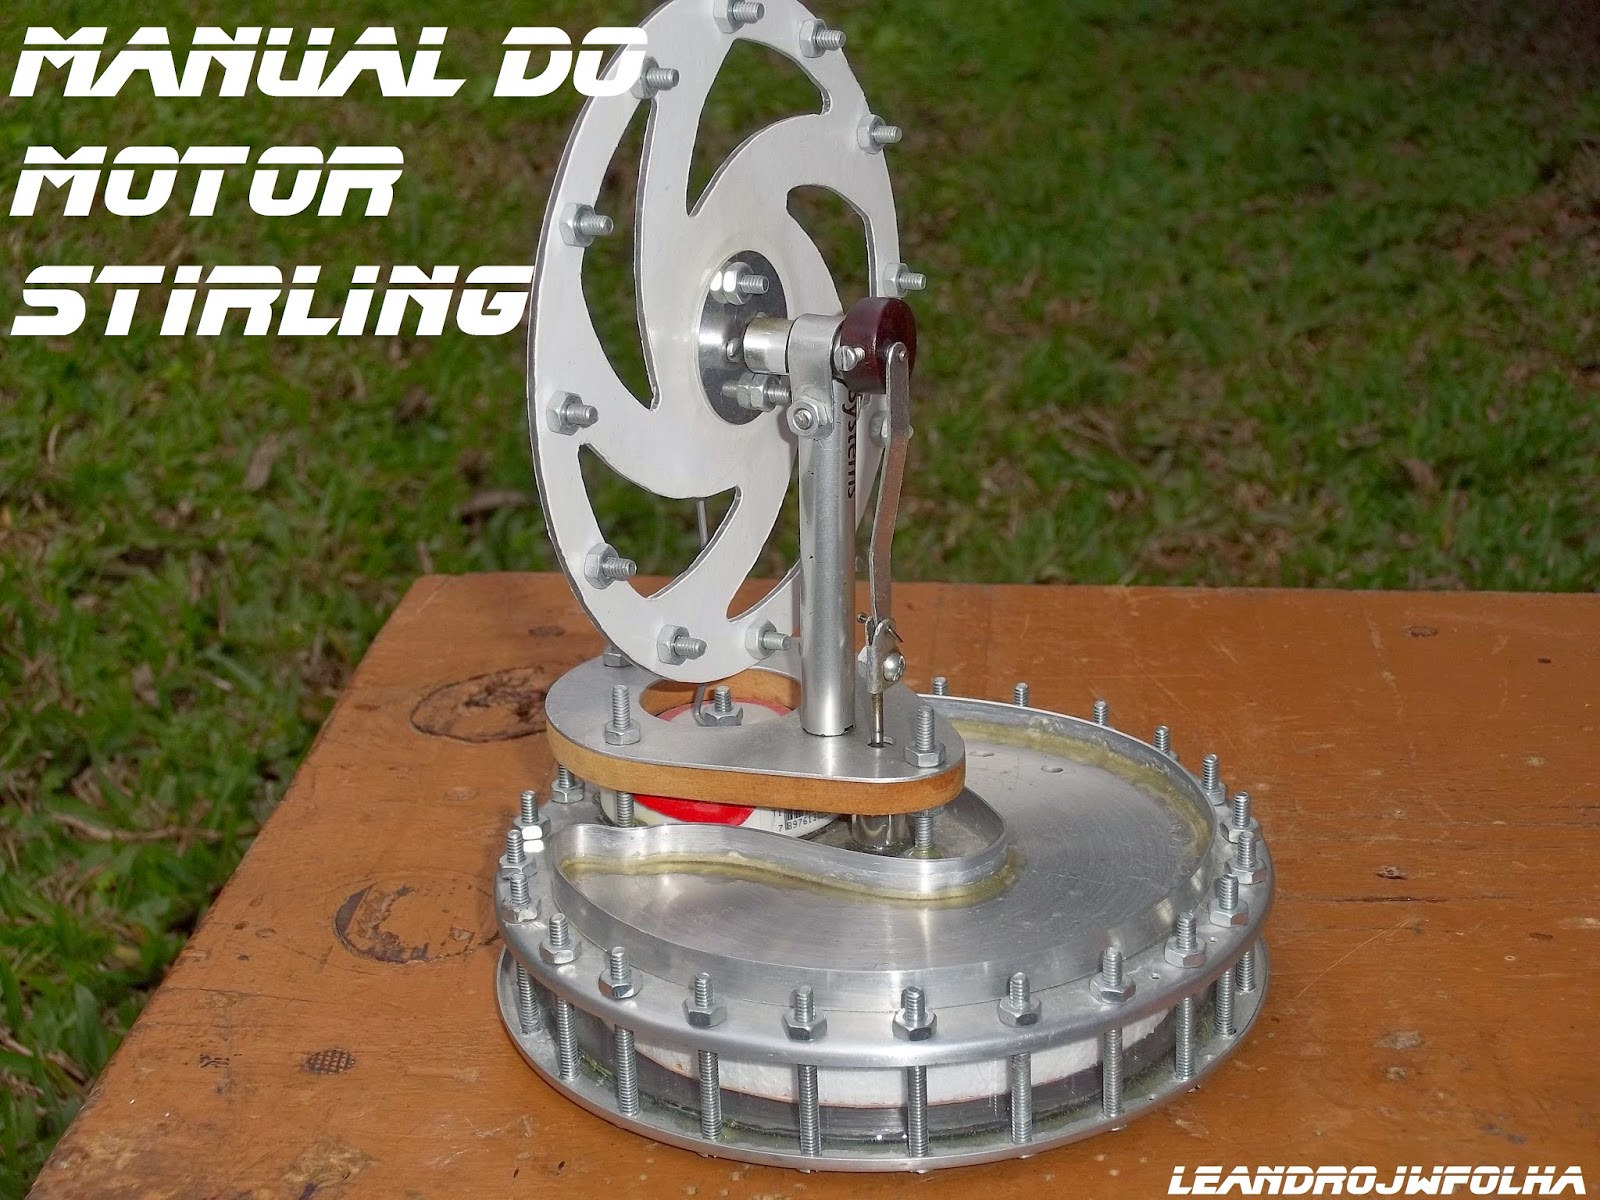 Manual do motor Stirling, motor caseiro do modelo Gama LTD